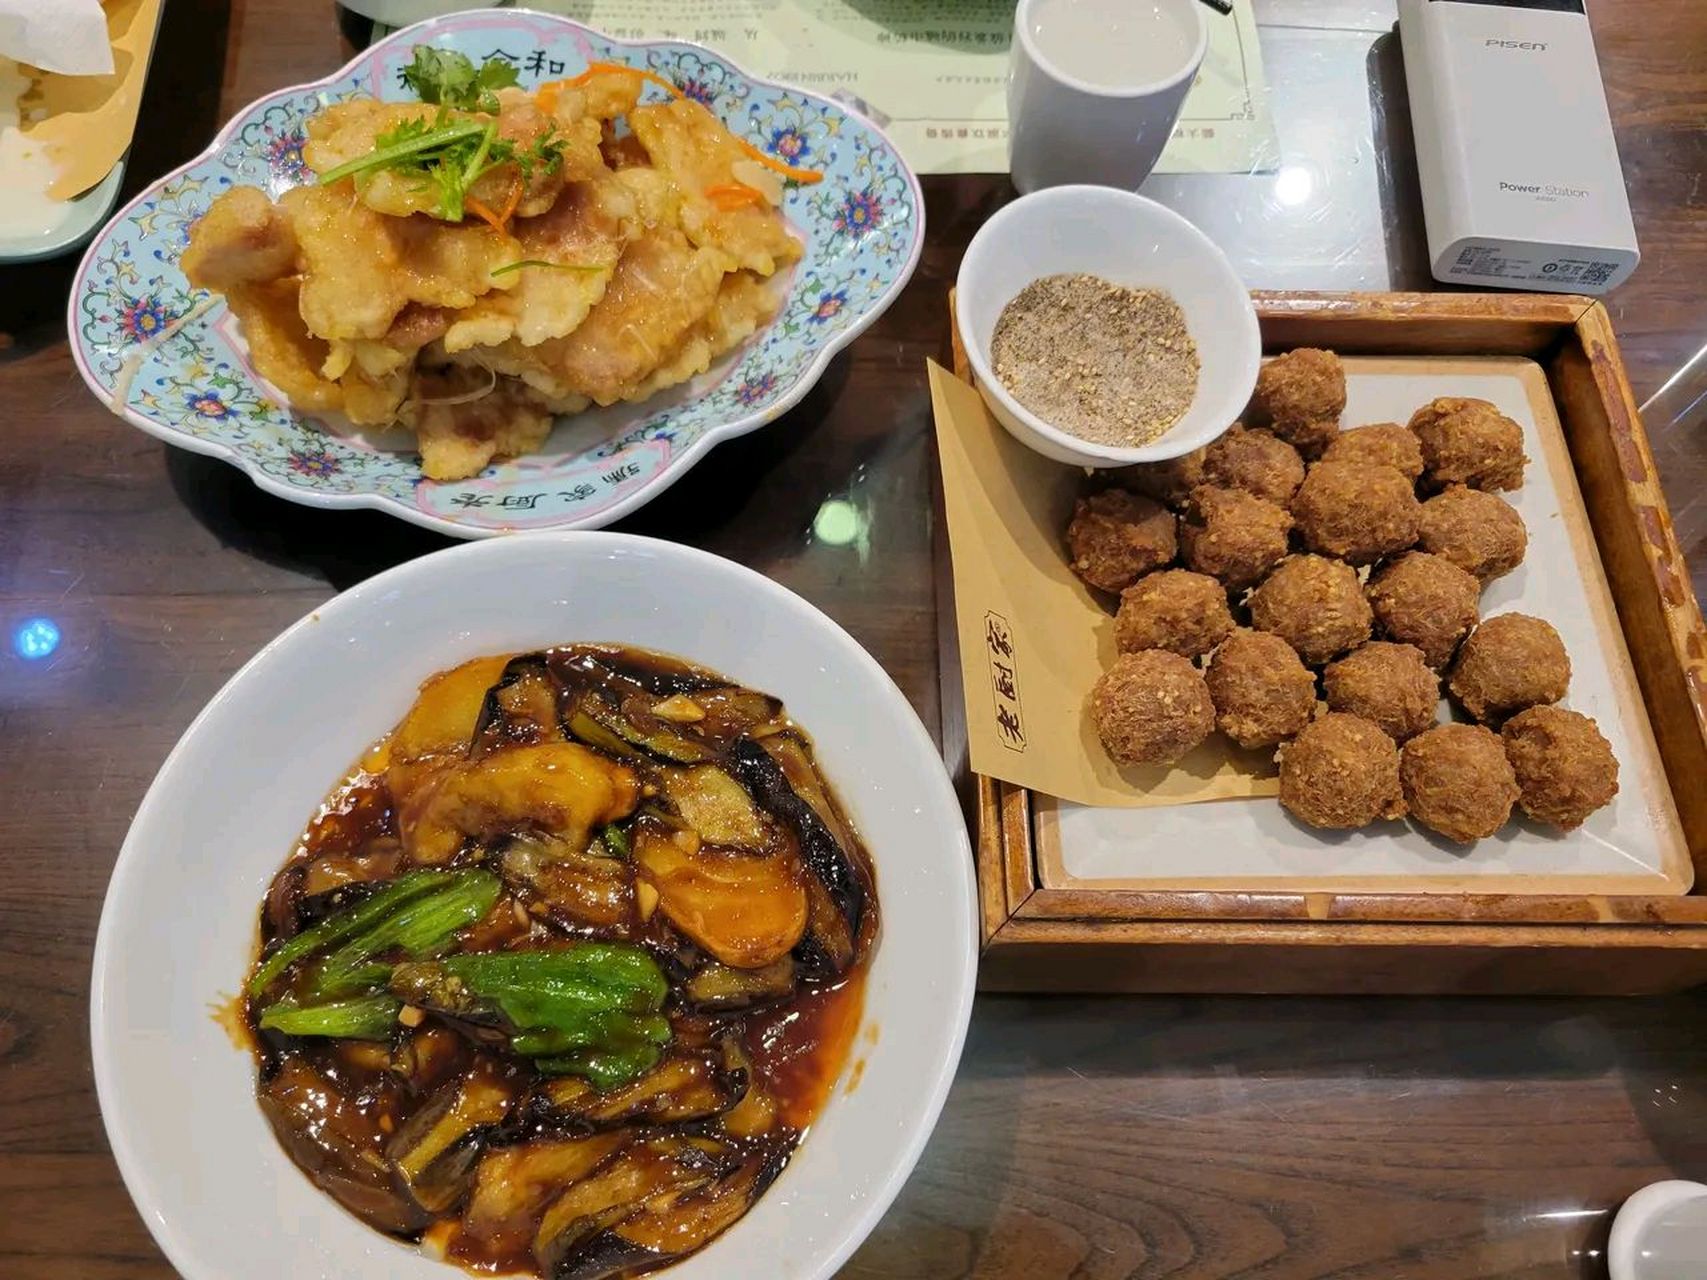 在哈尔滨饭店吃饭,发现一个很普遍的现象,那就是绝大多数堂食顾客用餐